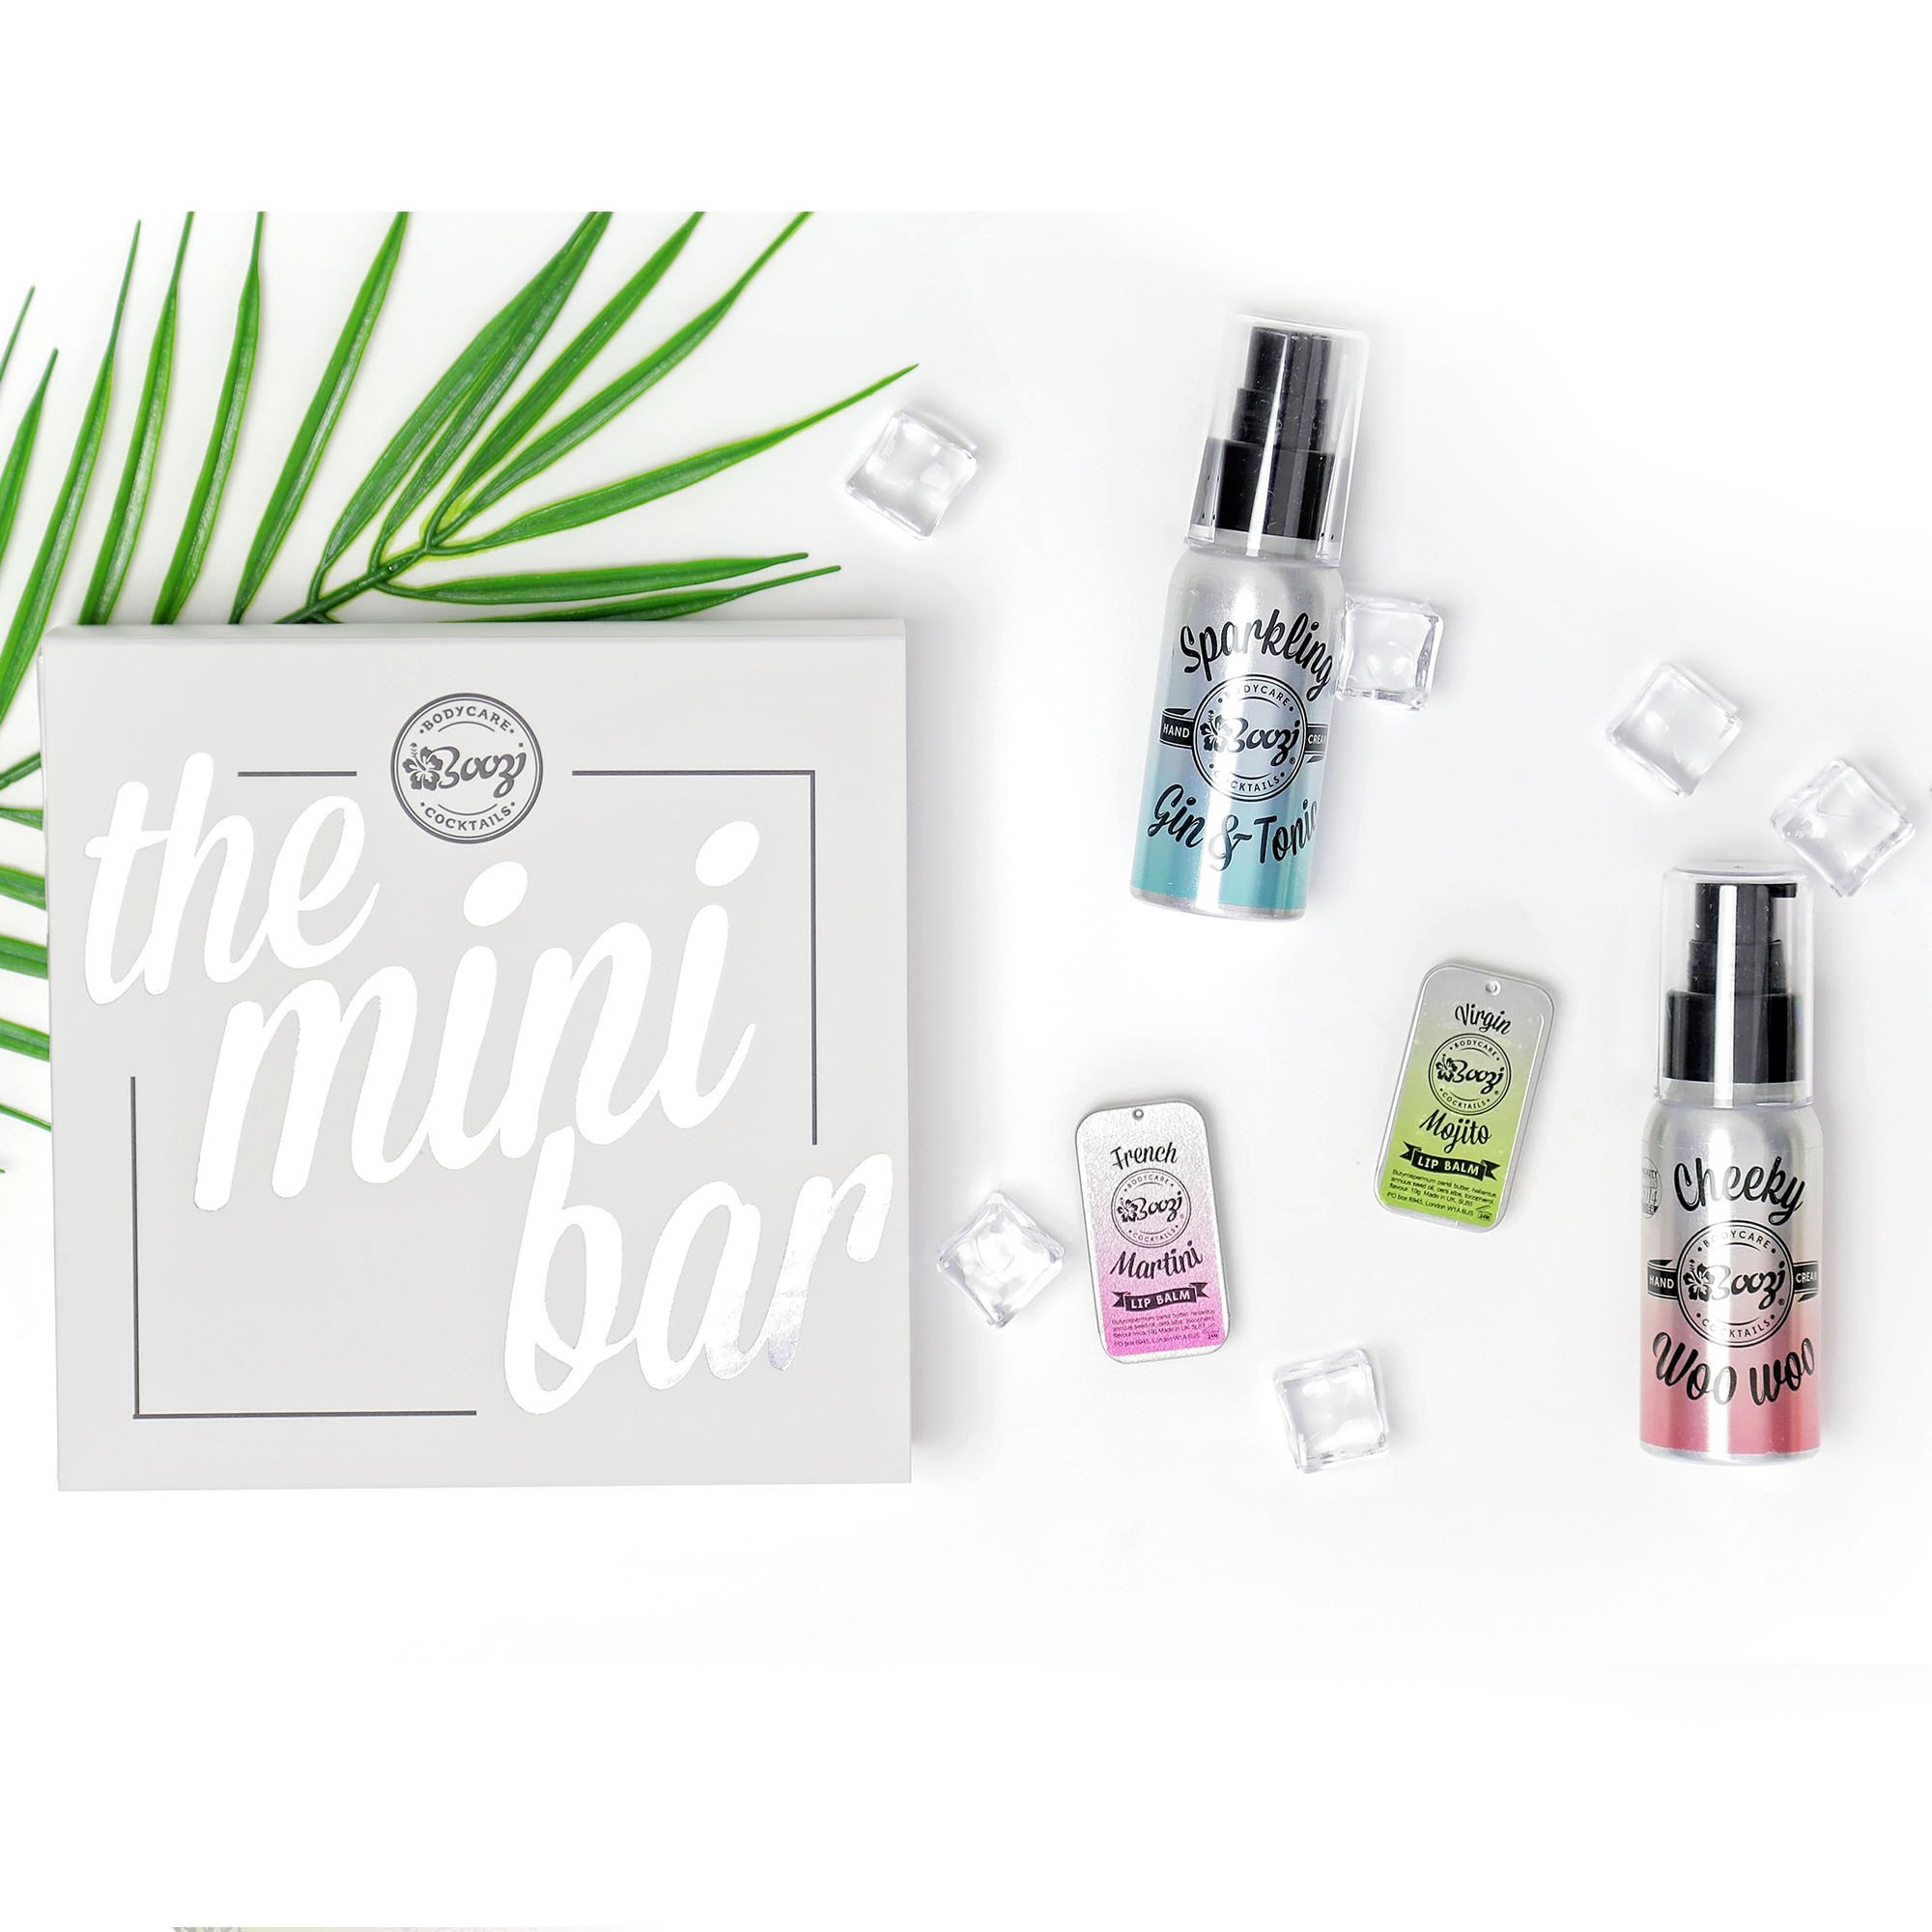 Win a Boozi Mini Bar Gift Box